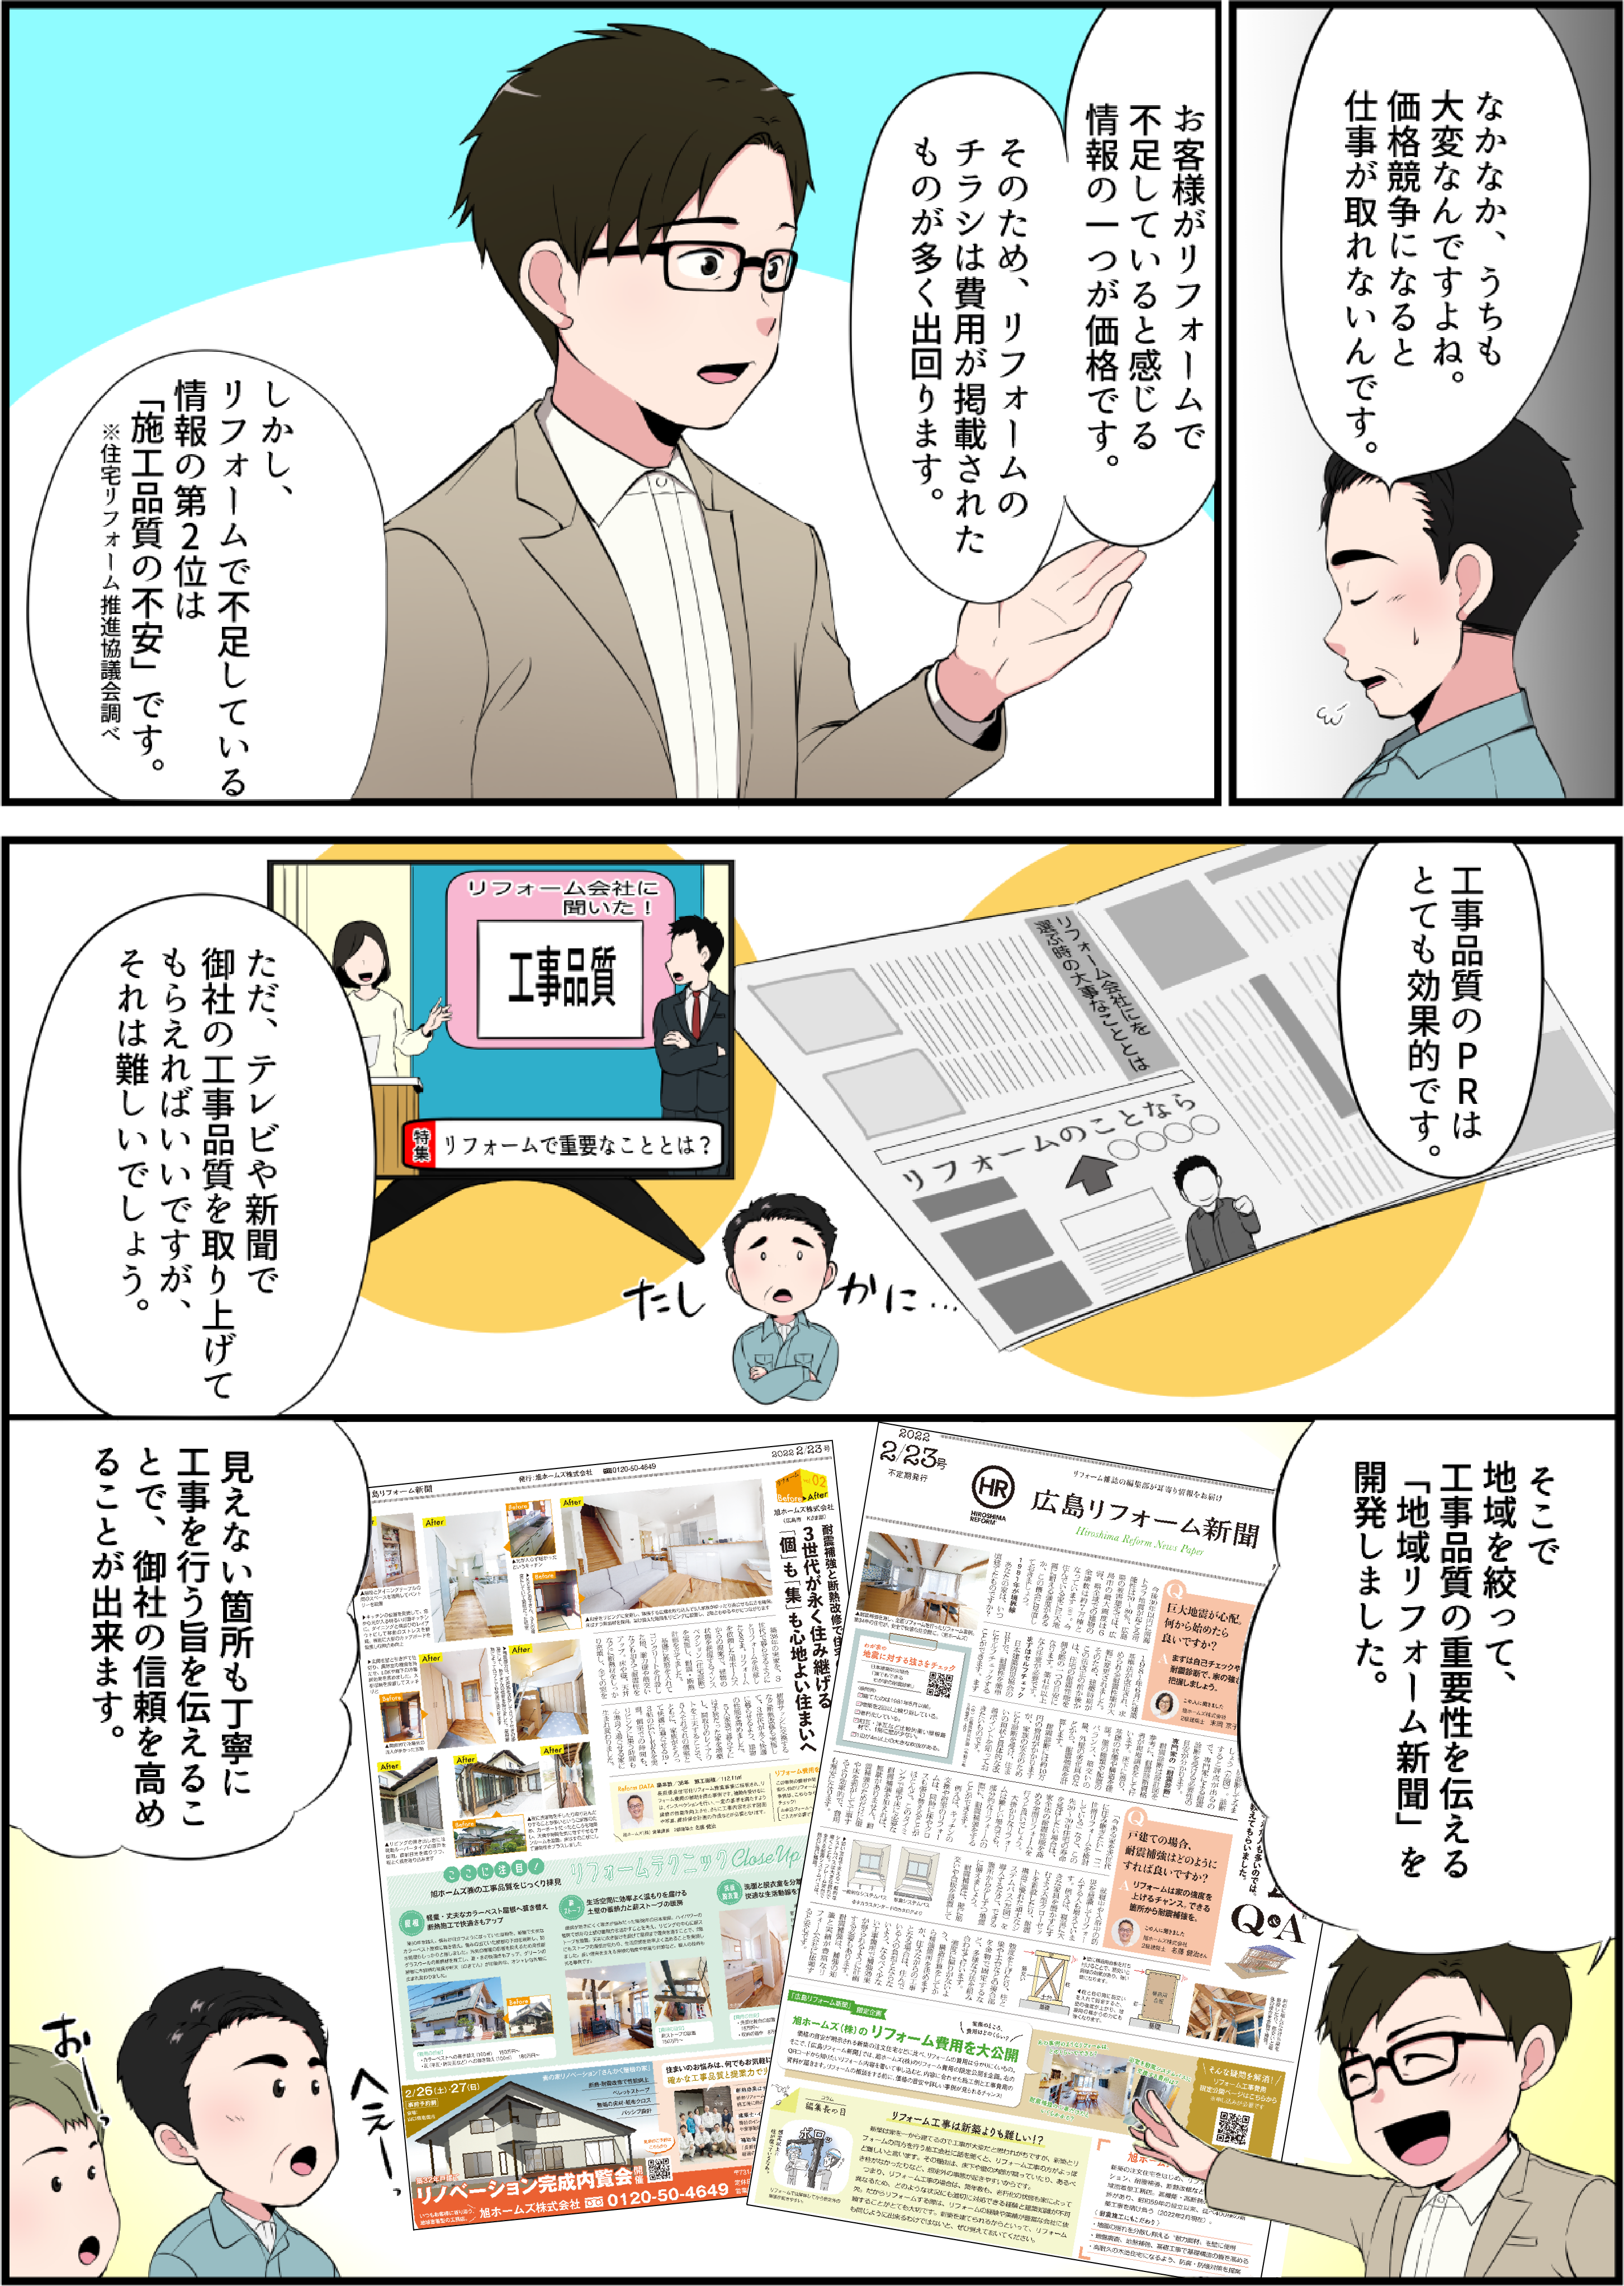 地域リフォーム新聞 漫画説明3